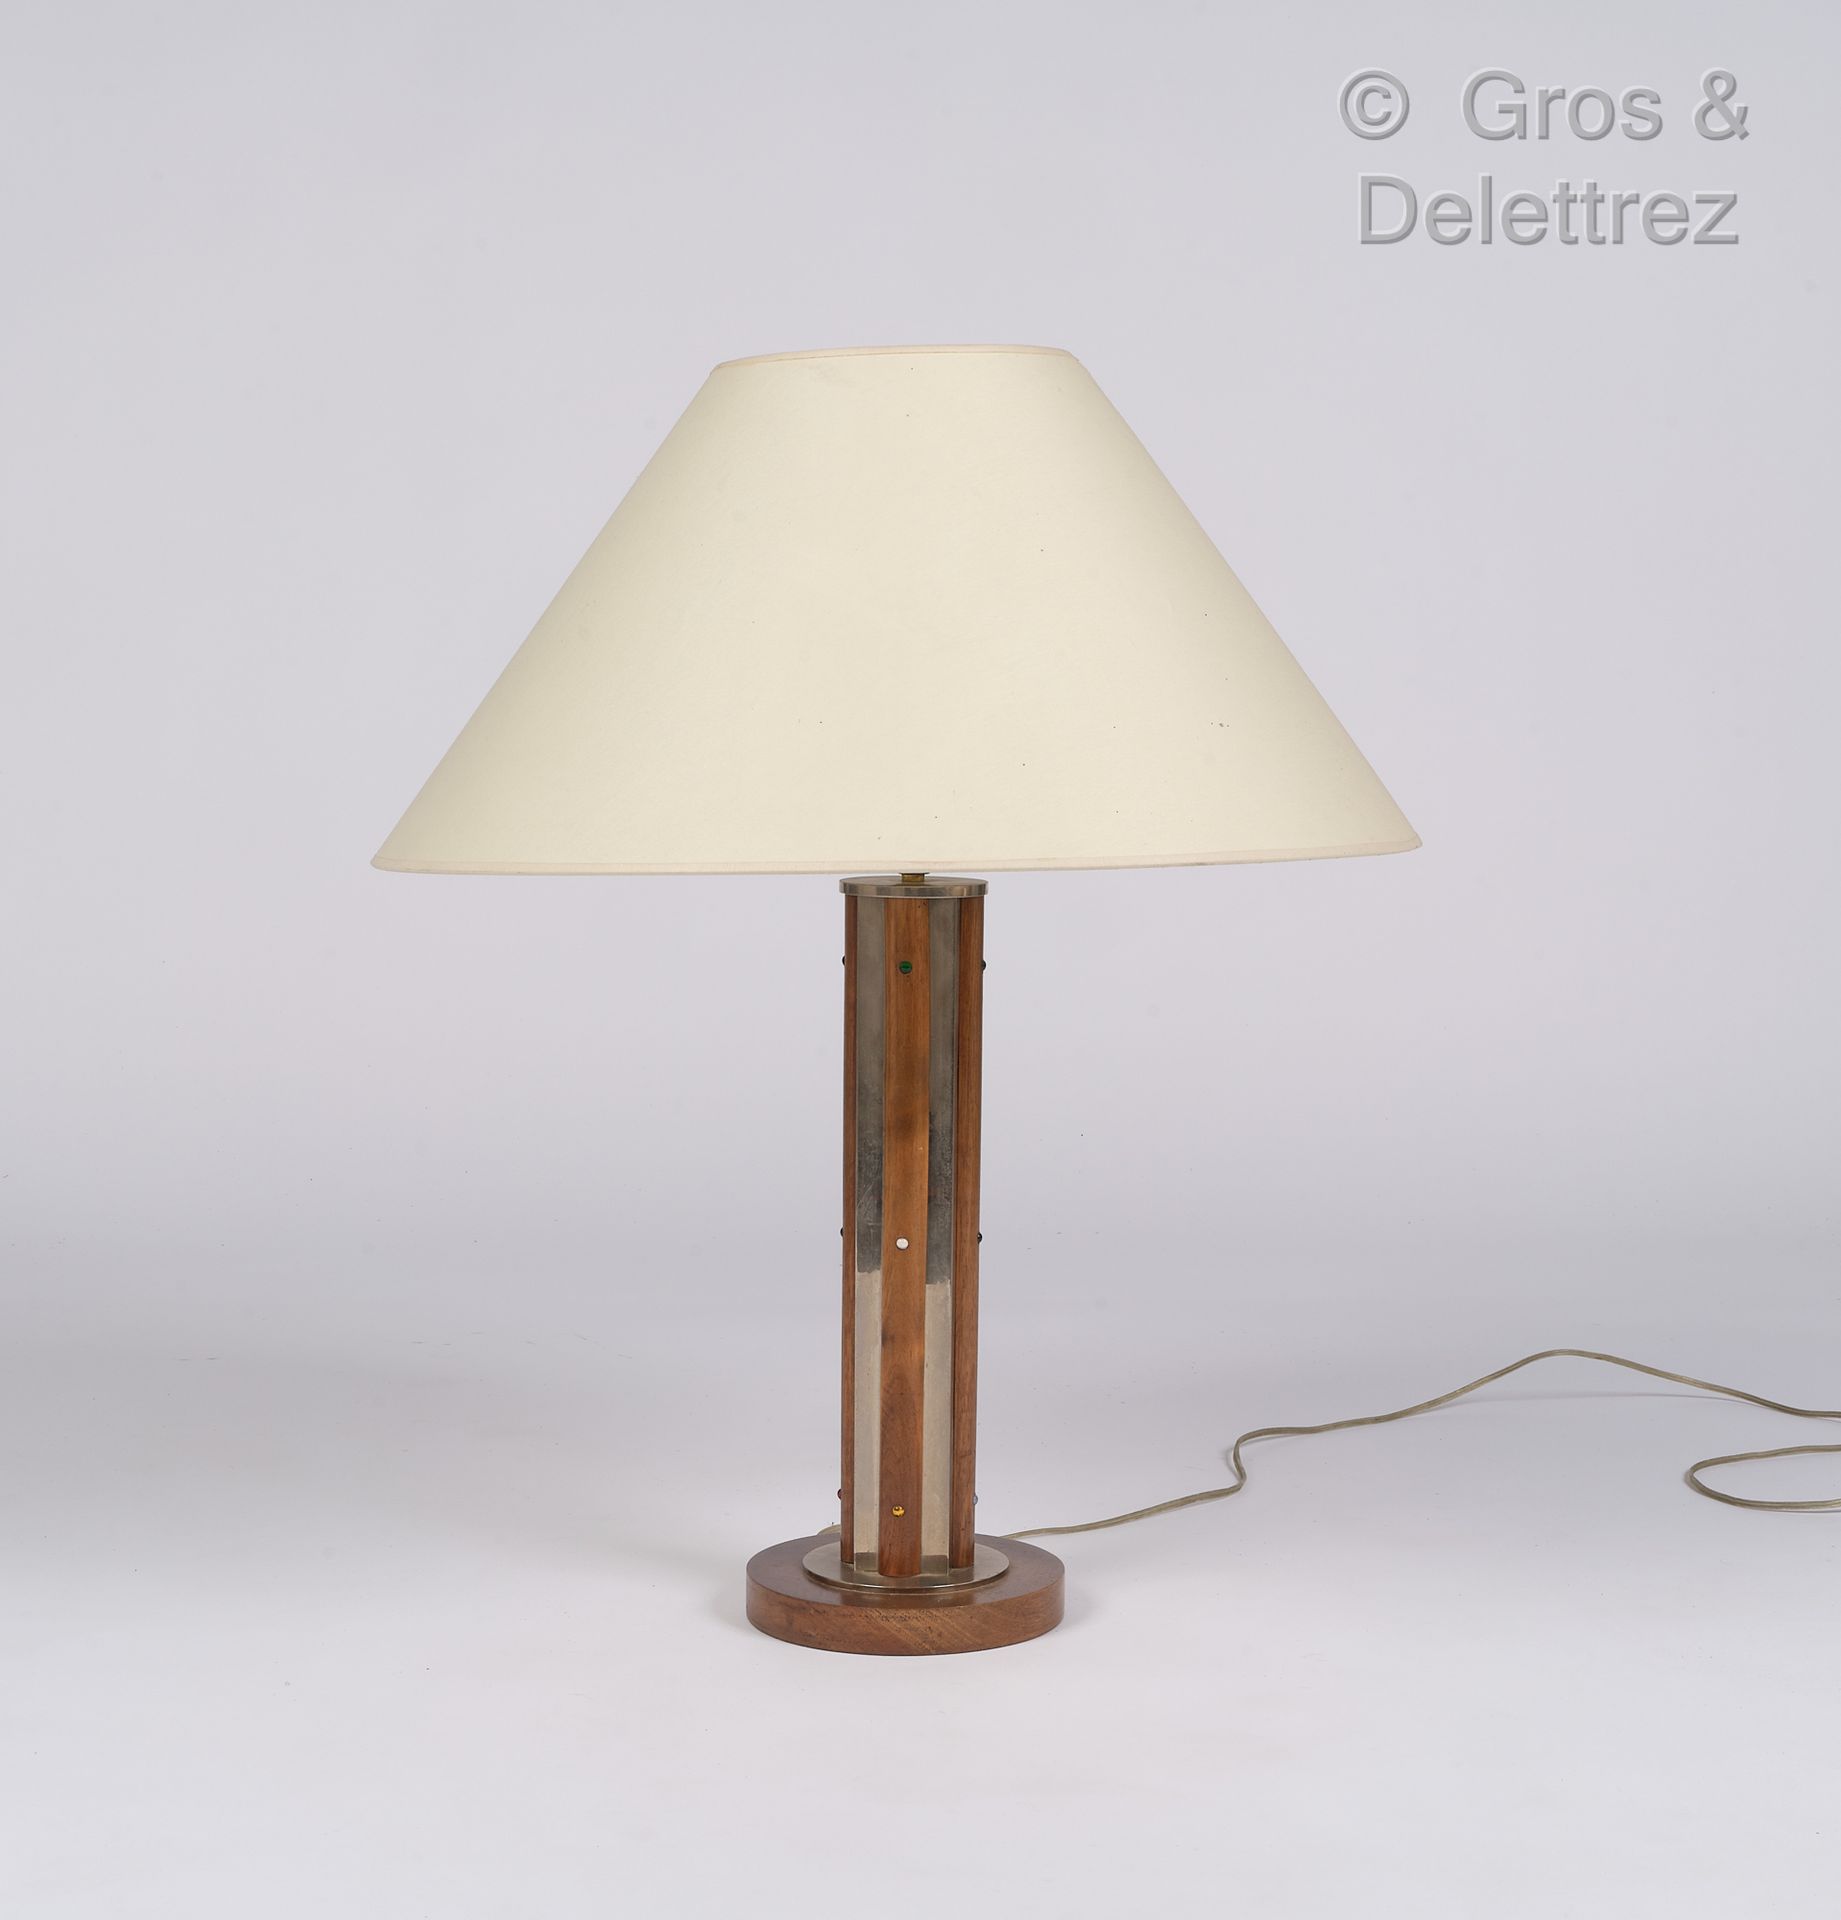 Null Obra modernista

Lámpara de escritorio de madera y metal cromado

H: 49 cm